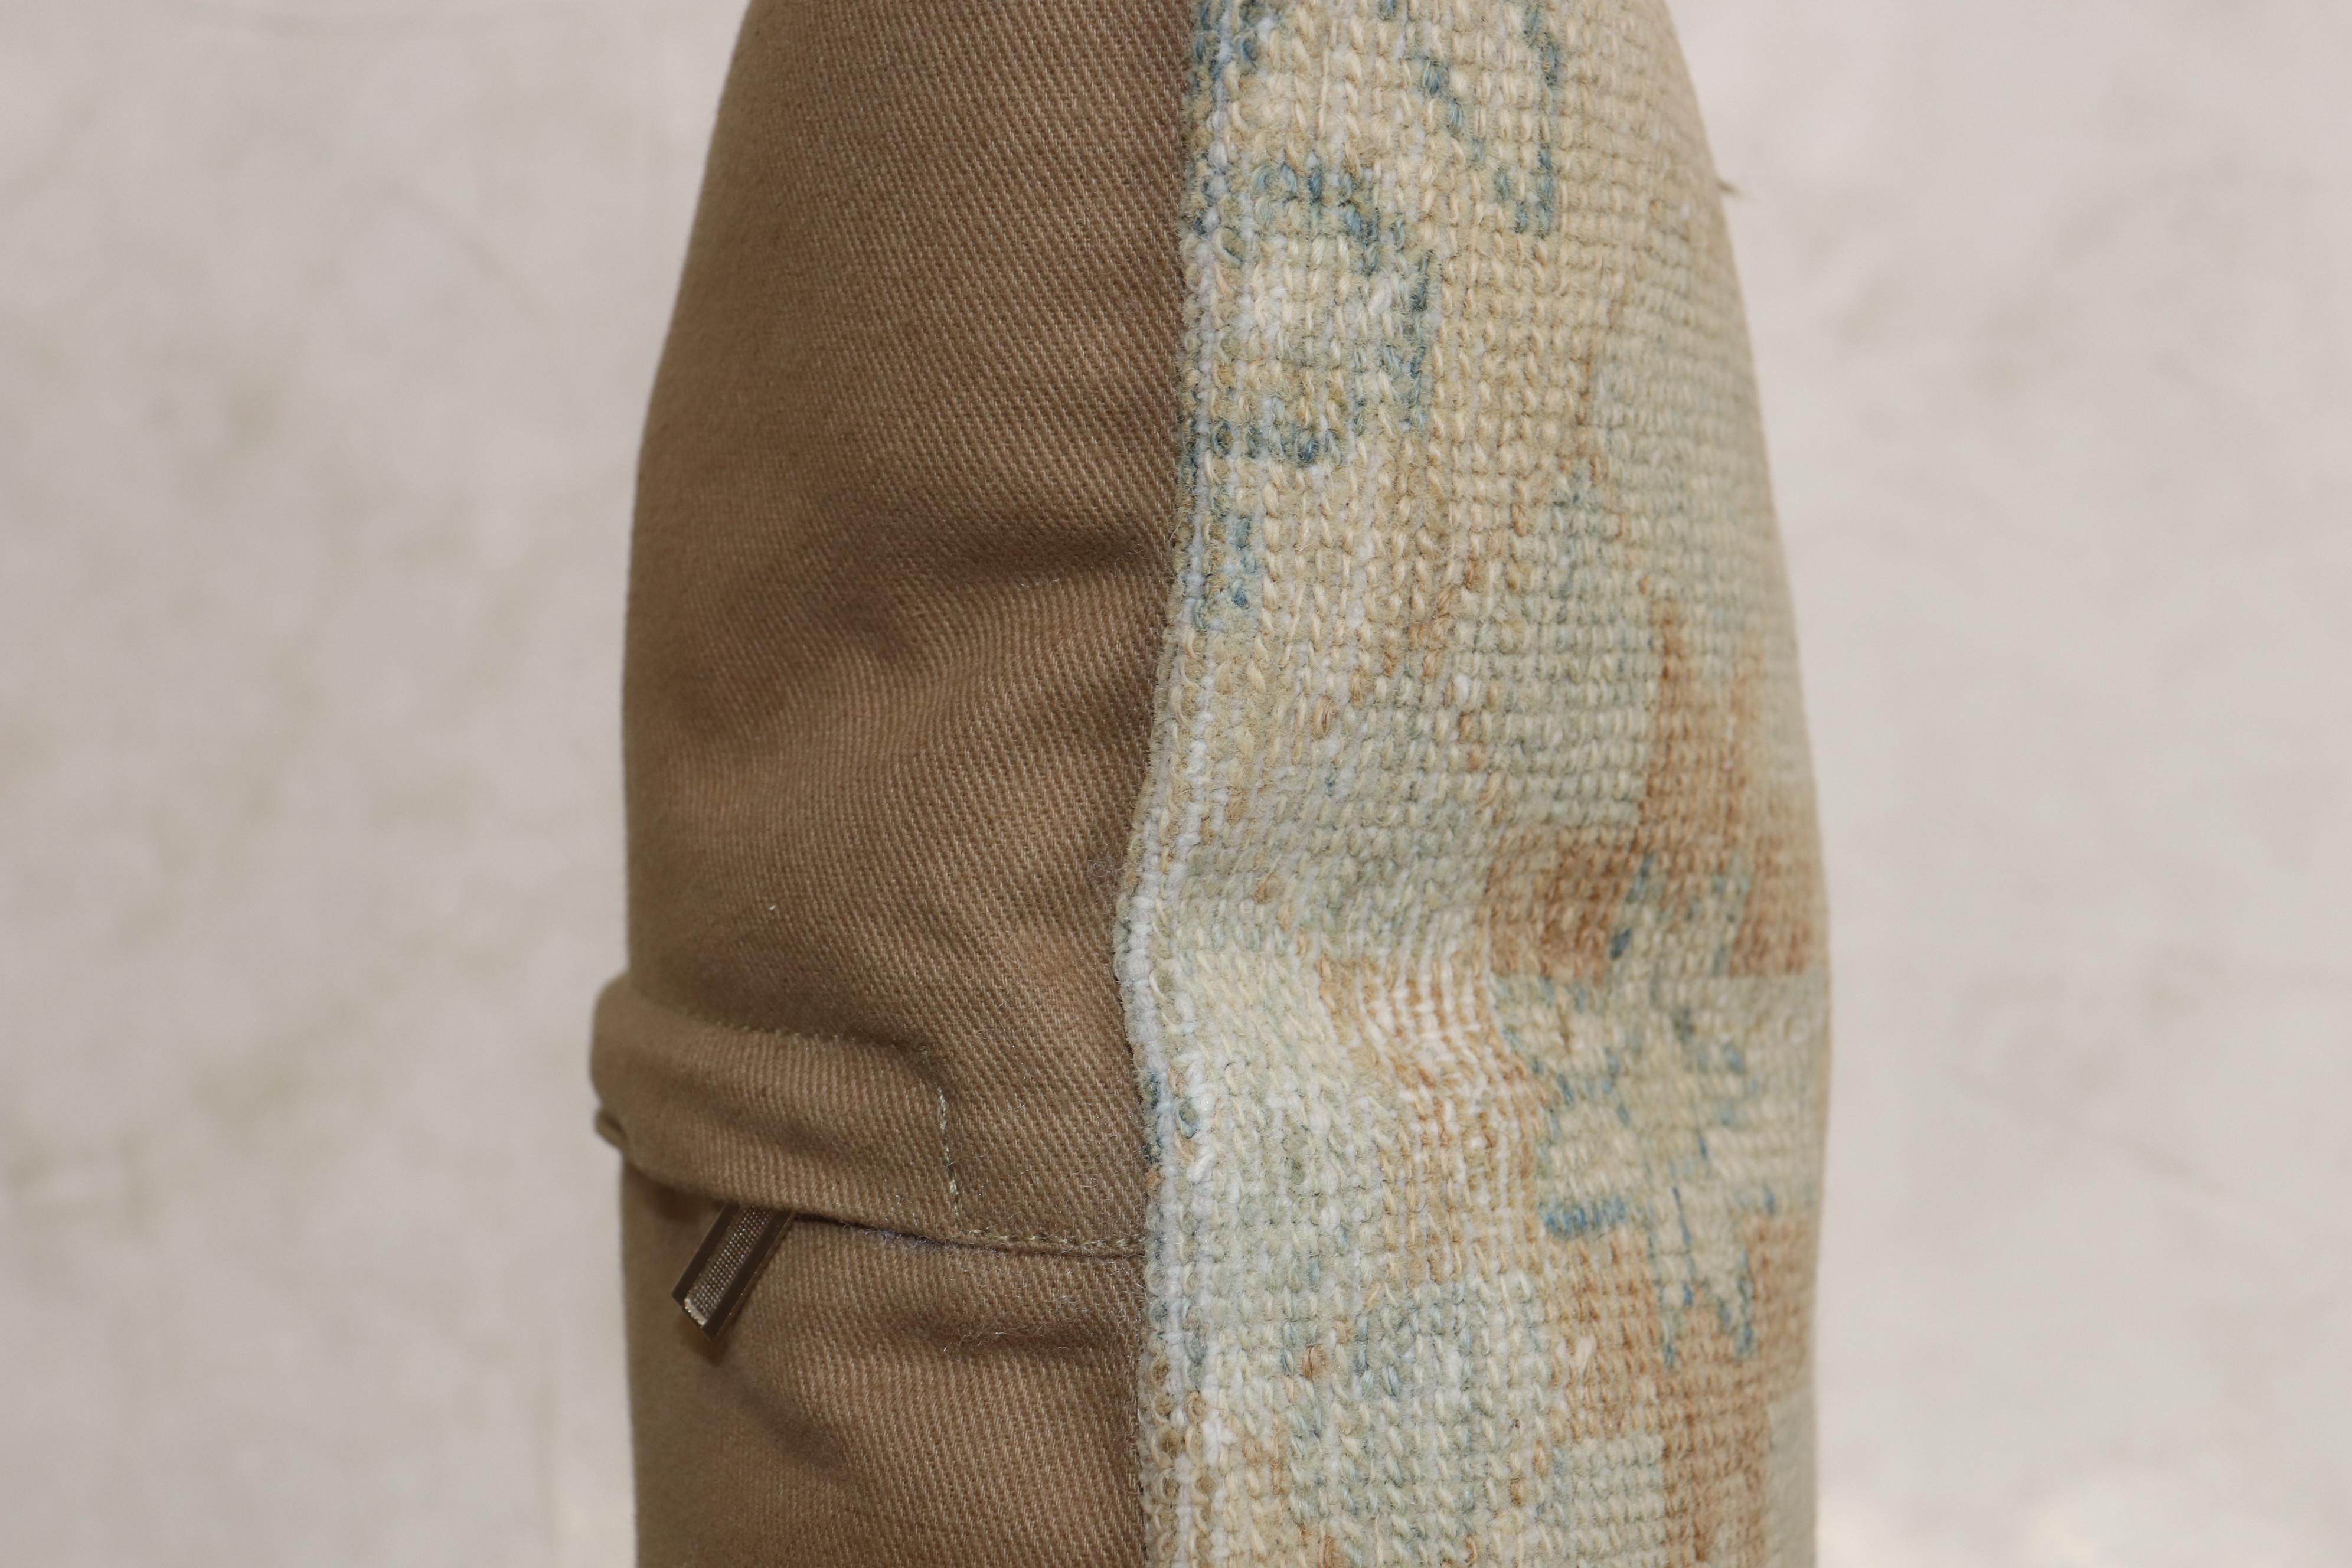 Coussin de taille carrée fabriqué à partir d'un tapis persan Serab du 20e siècle. Fermeture à glissière, insert en polyfill fourni.

Mesures : 17